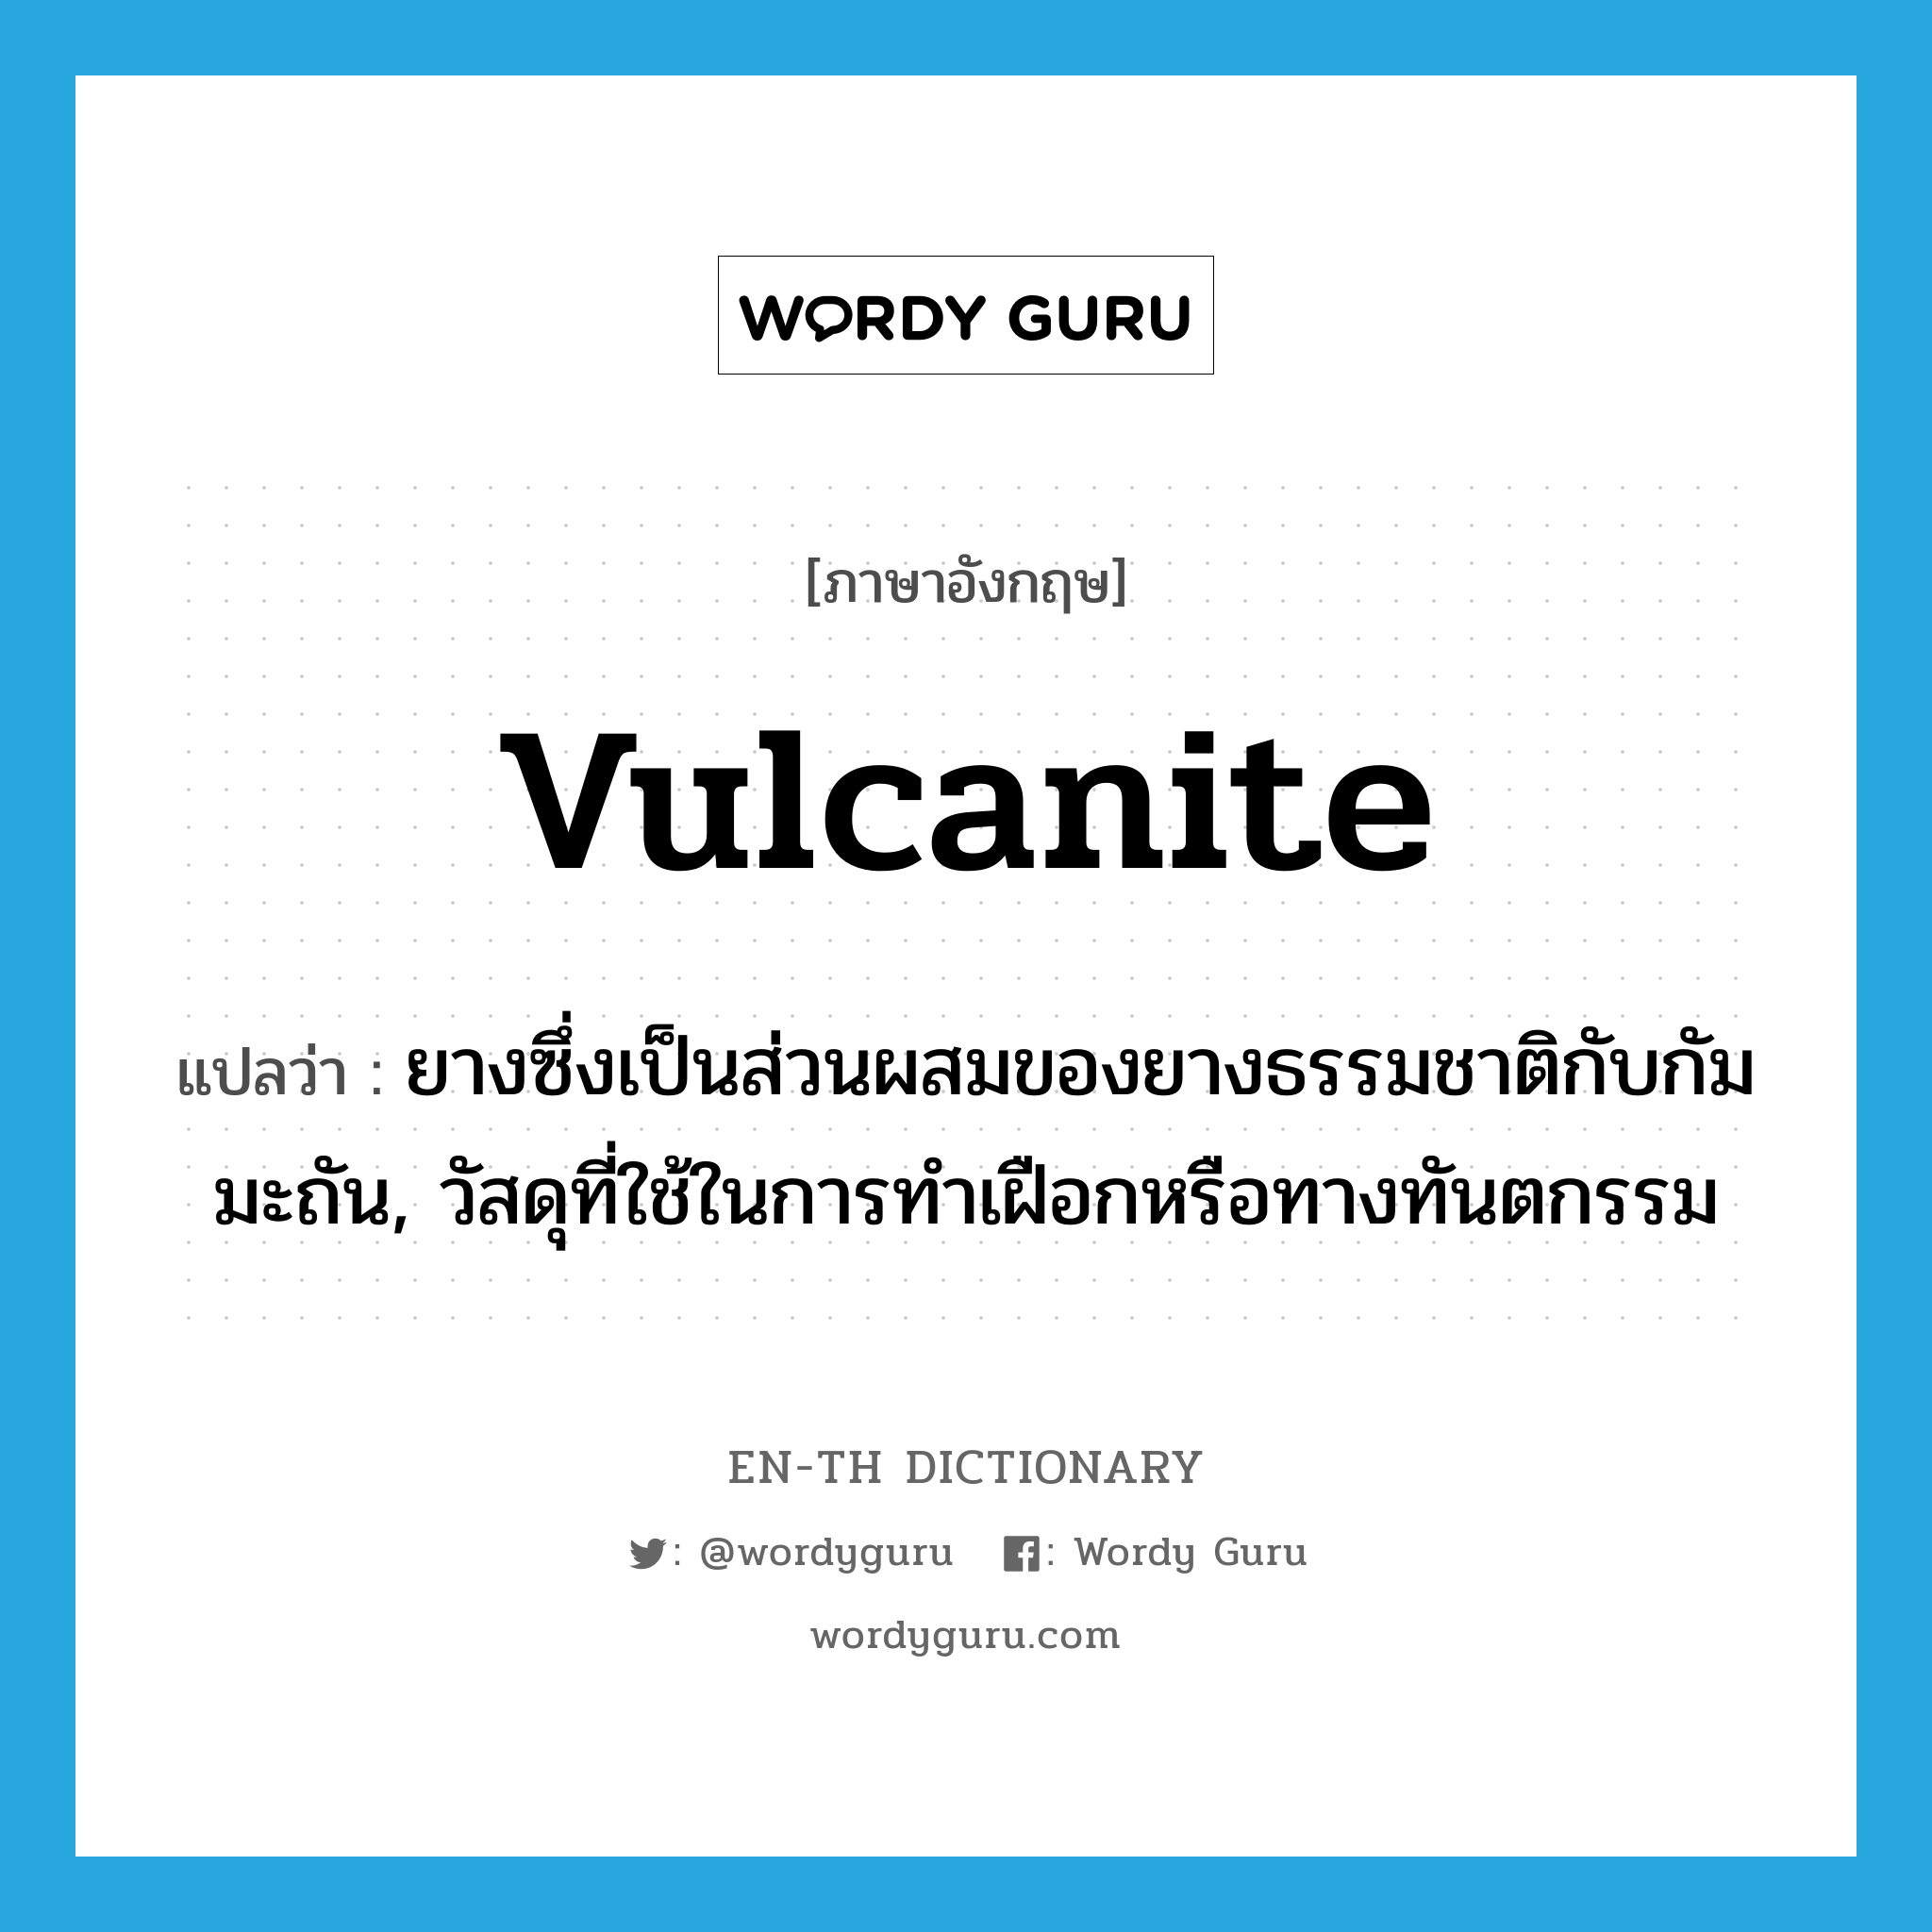 vulcanite แปลว่า?, คำศัพท์ภาษาอังกฤษ vulcanite แปลว่า ยางซึ่งเป็นส่วนผสมของยางธรรมชาติกับกัมมะถัน, วัสดุที่ใช้ในการทำเฝือกหรือทางทันตกรรม ประเภท N หมวด N